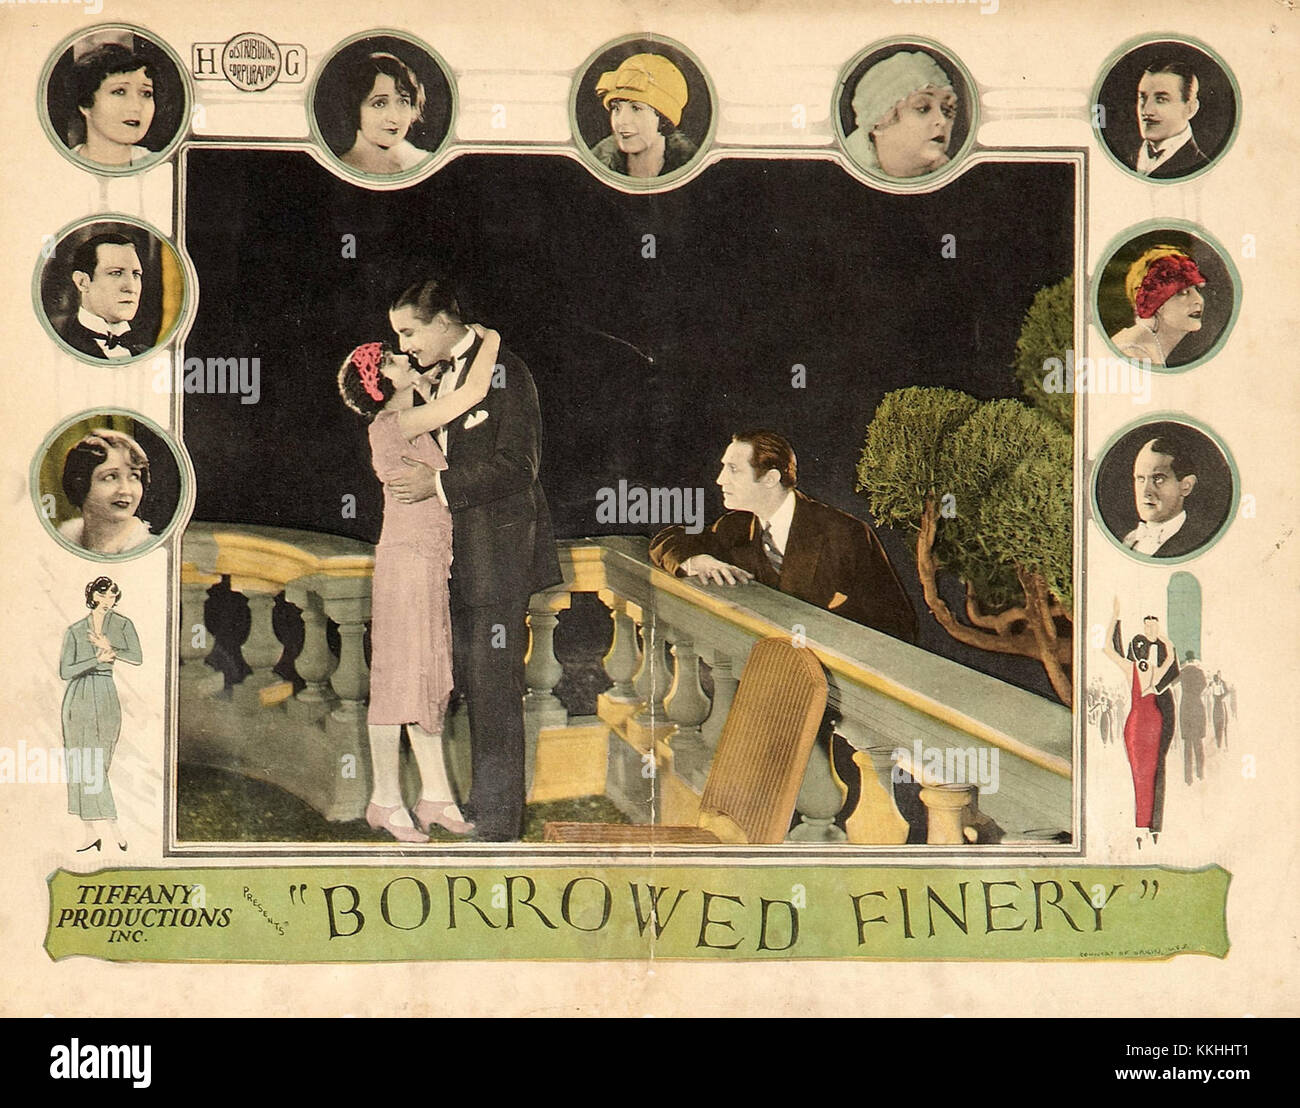 Borrowedfinery-1925-lobbycard Stock Photo